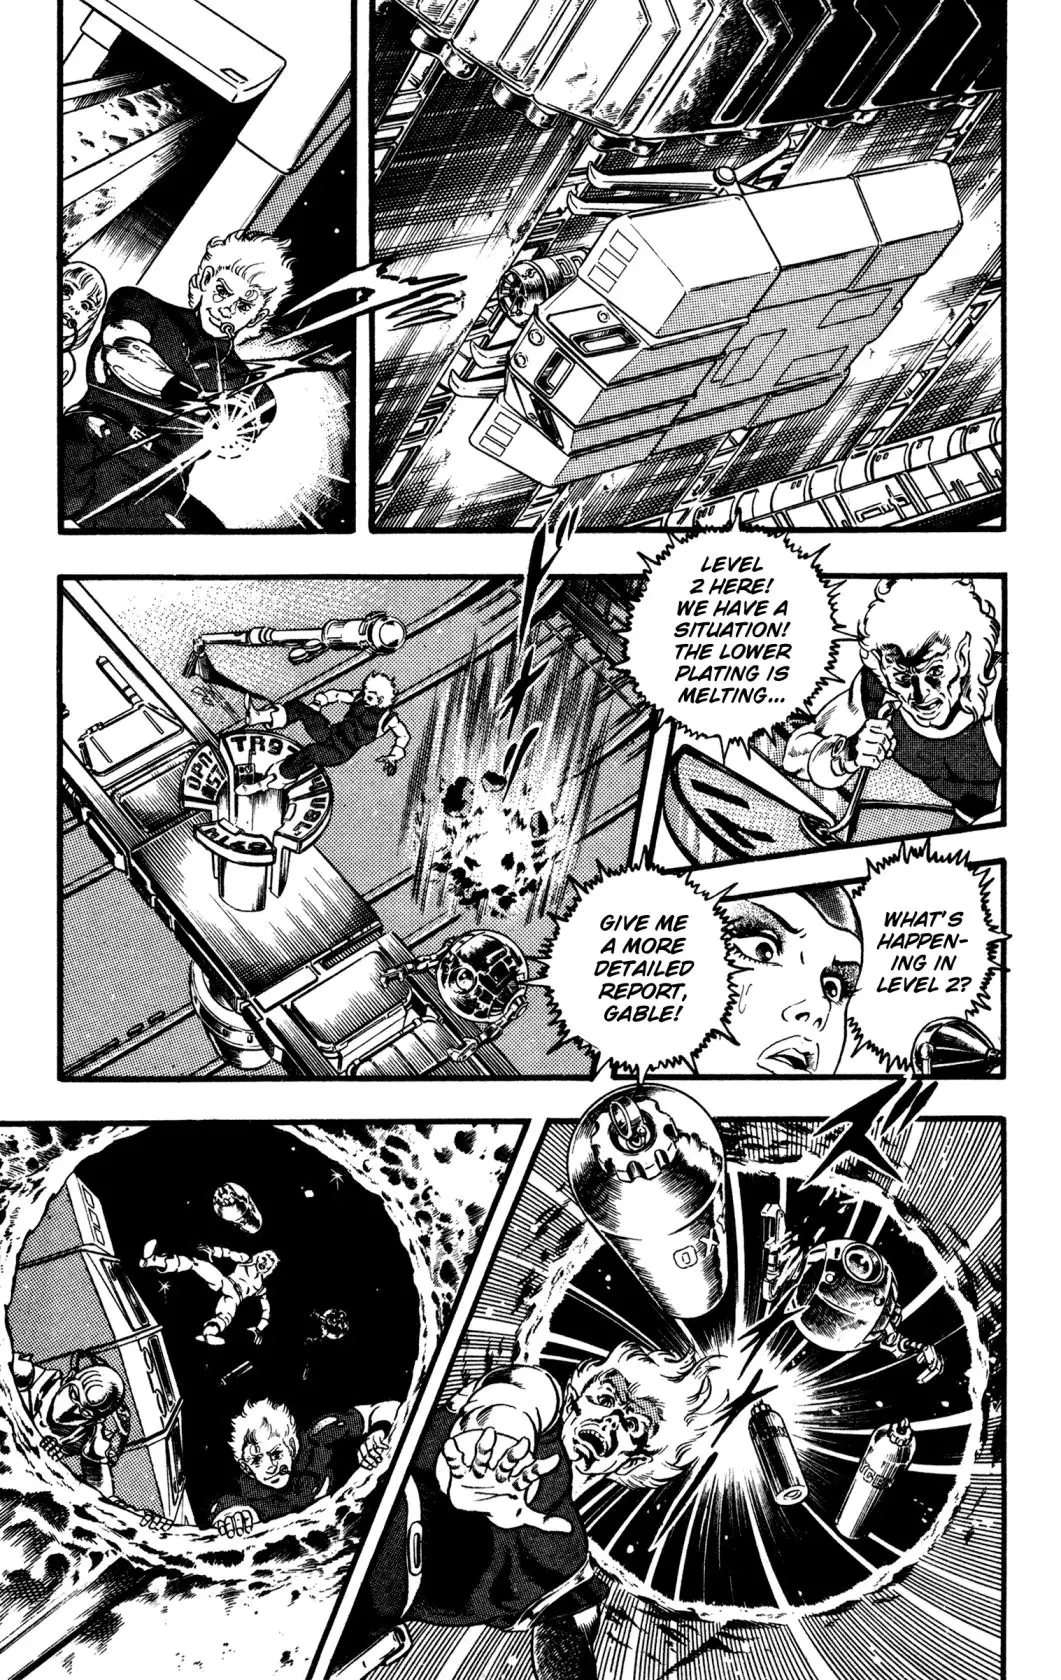 Space Adventure Cobra - 25 page 96-20f9dffa